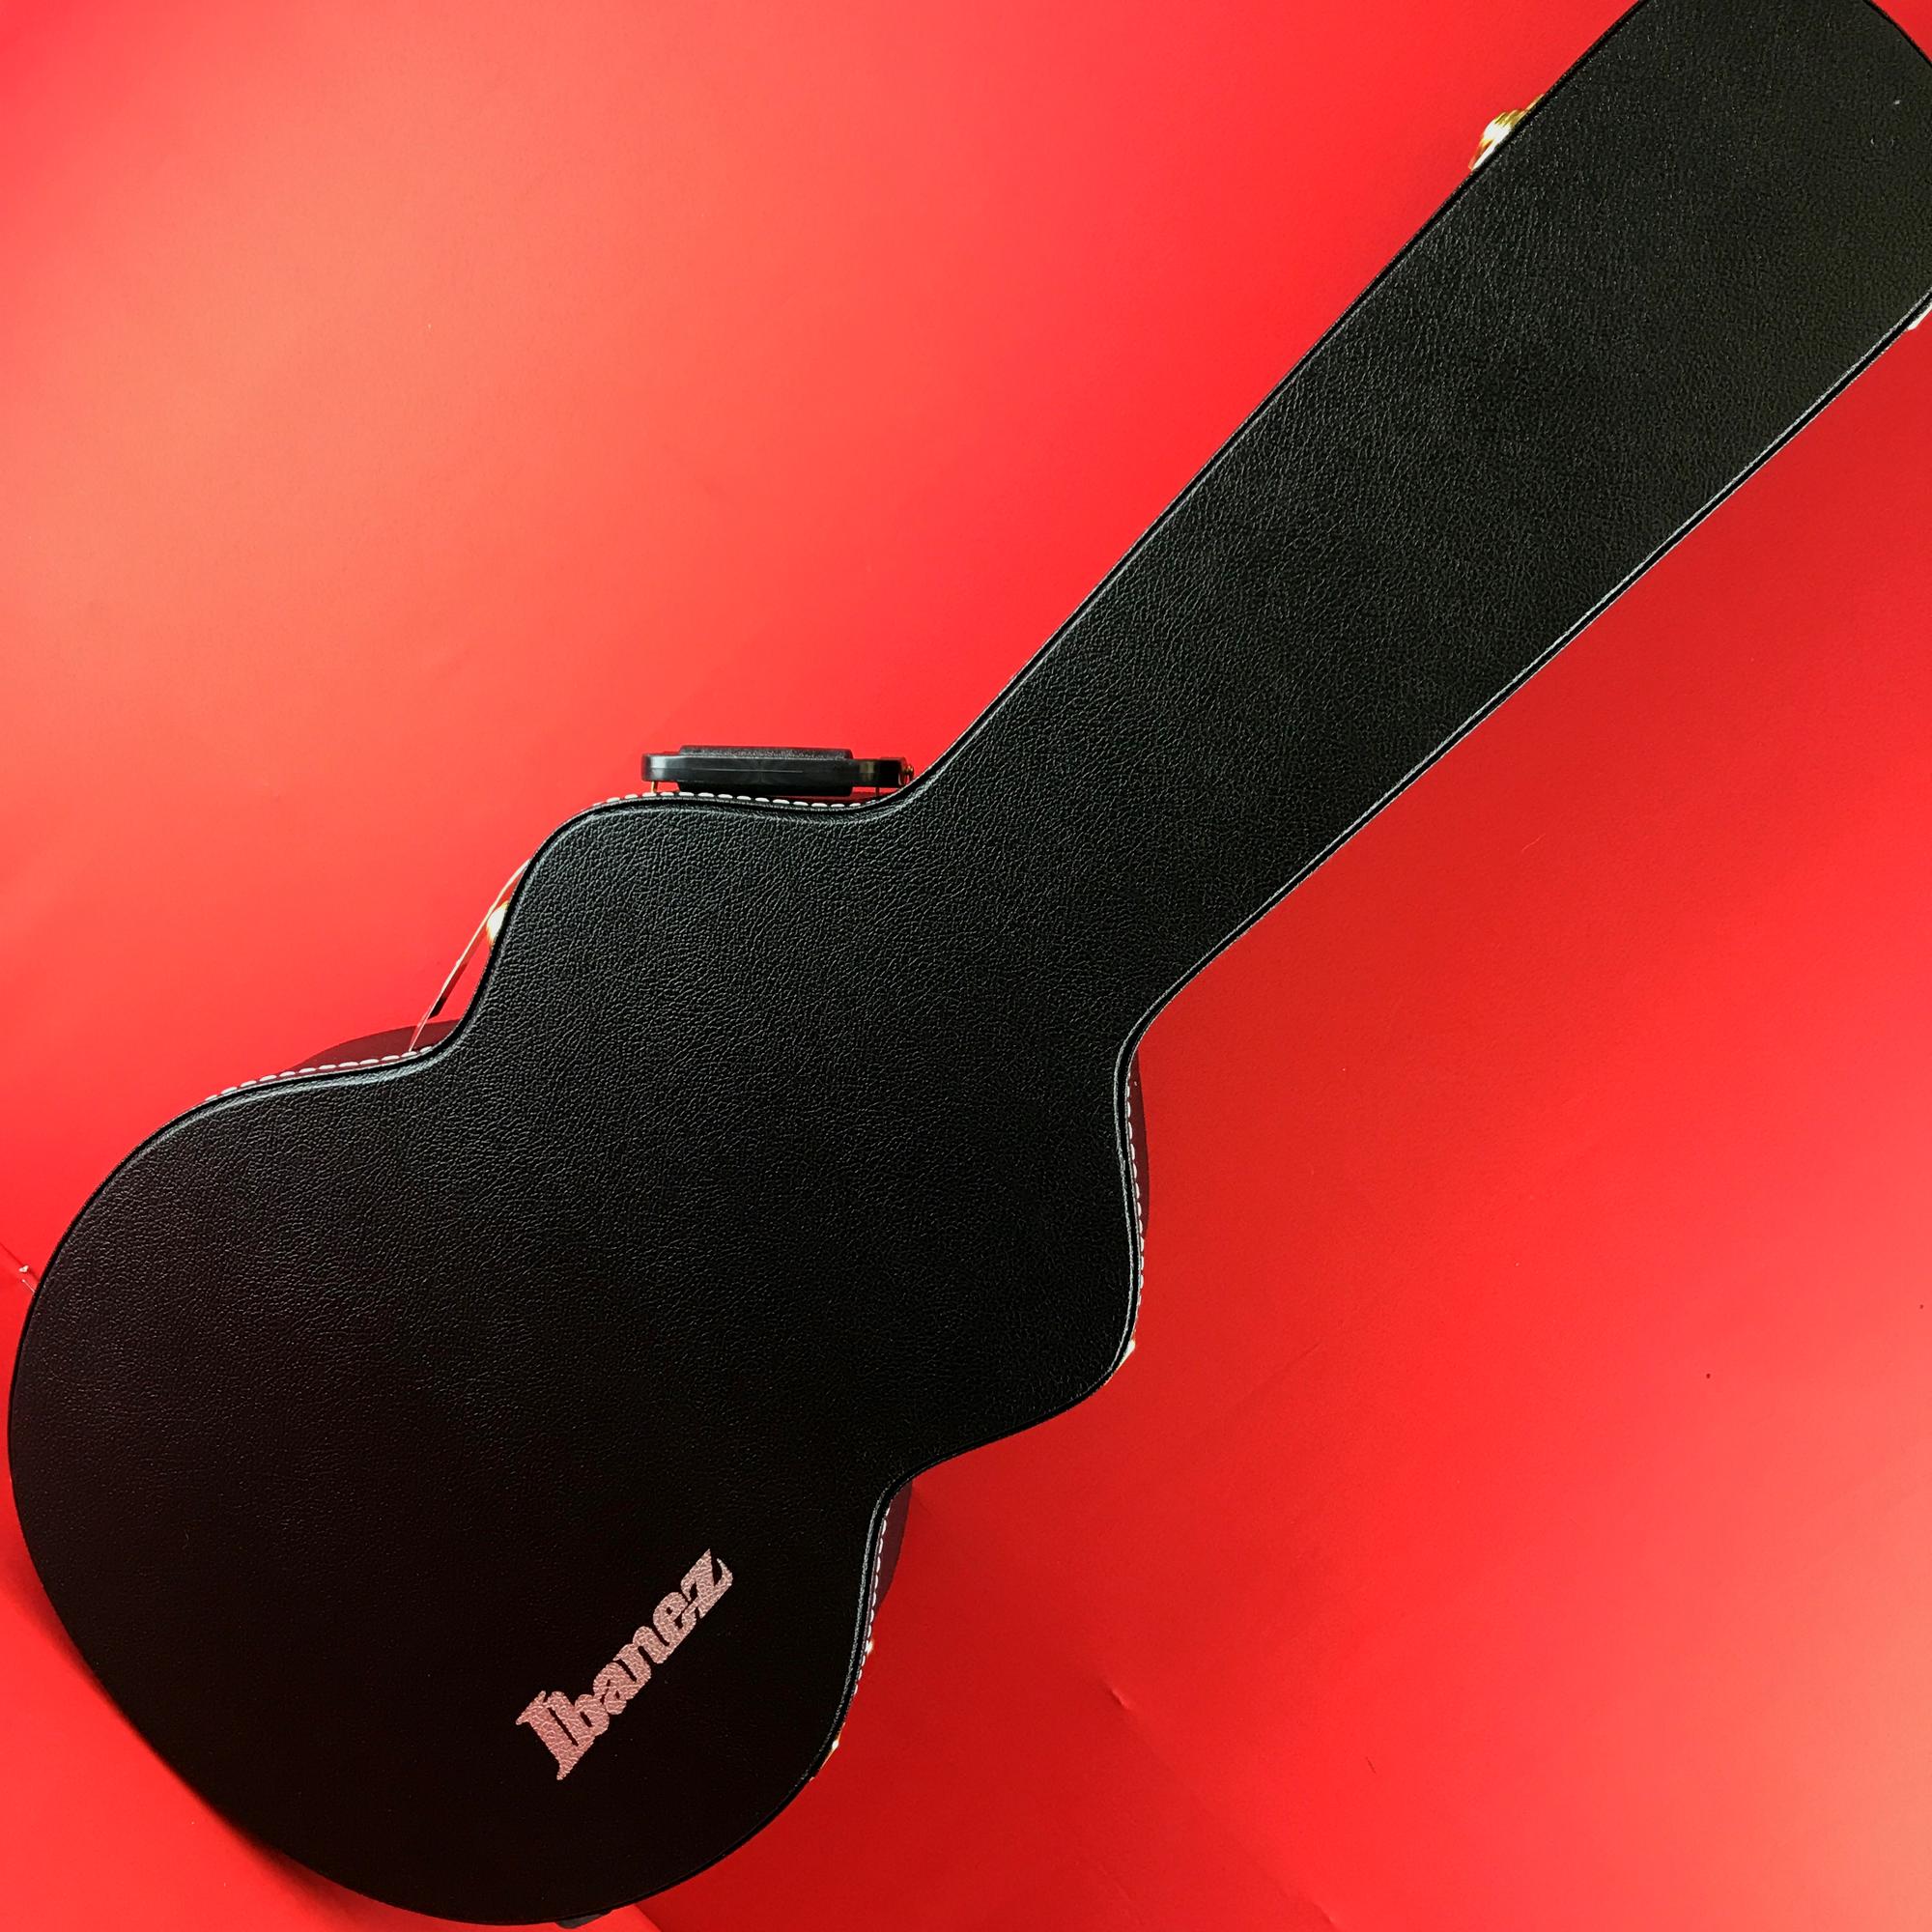 [USED] Ibanez AF100C Artcore Hardshell Case for AF Series Guitars